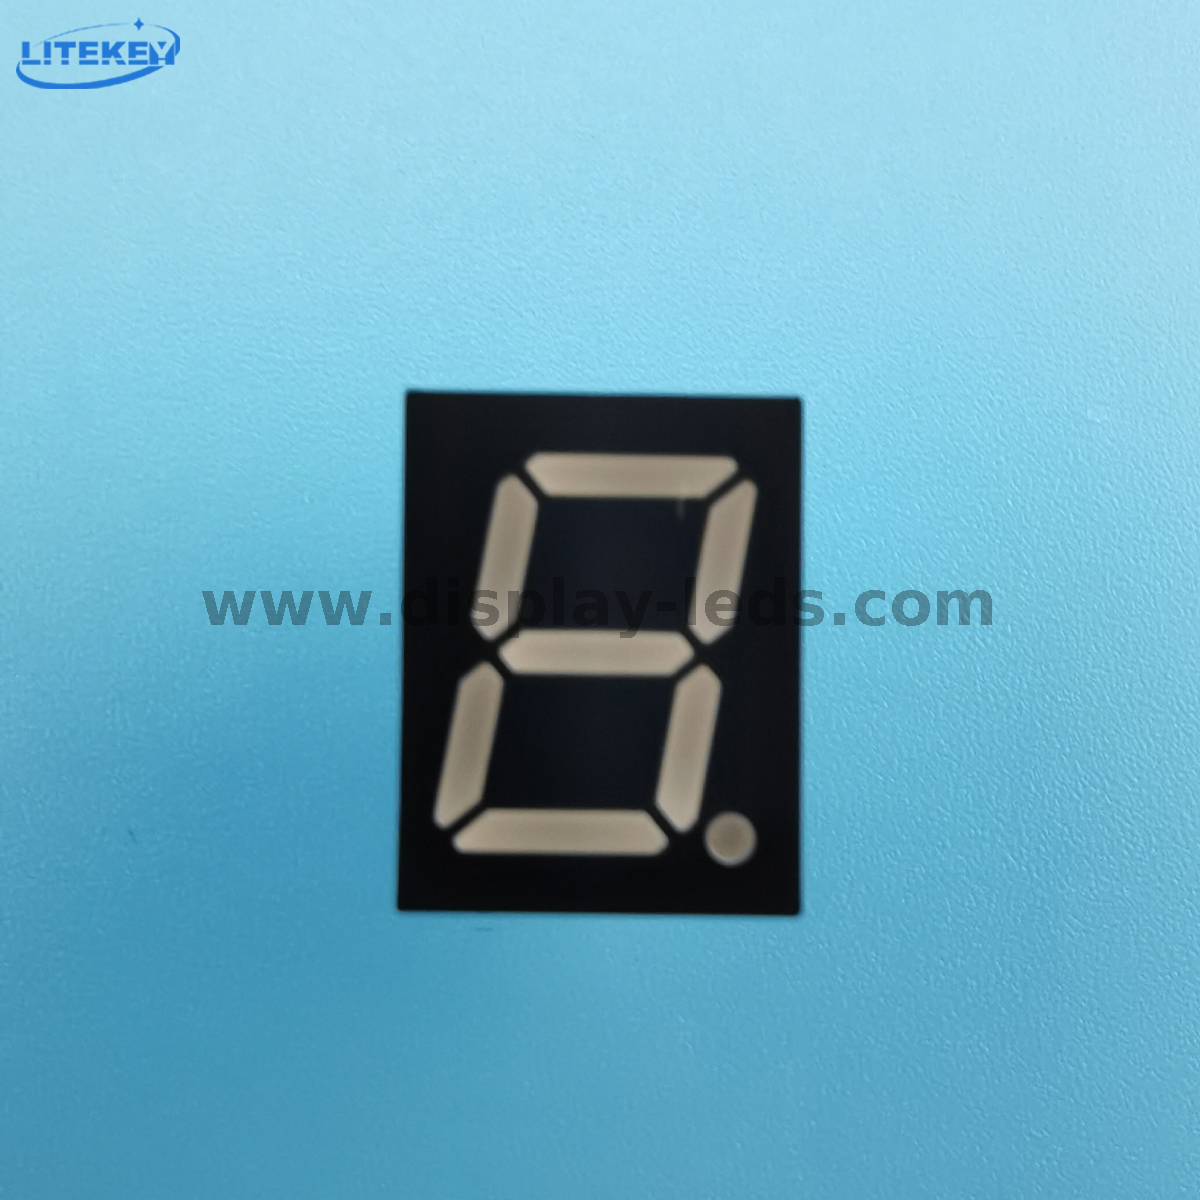 Serie LD3911A / B: pantalla de 7 segmentos de 1 dígito y 0,39 pulgadas